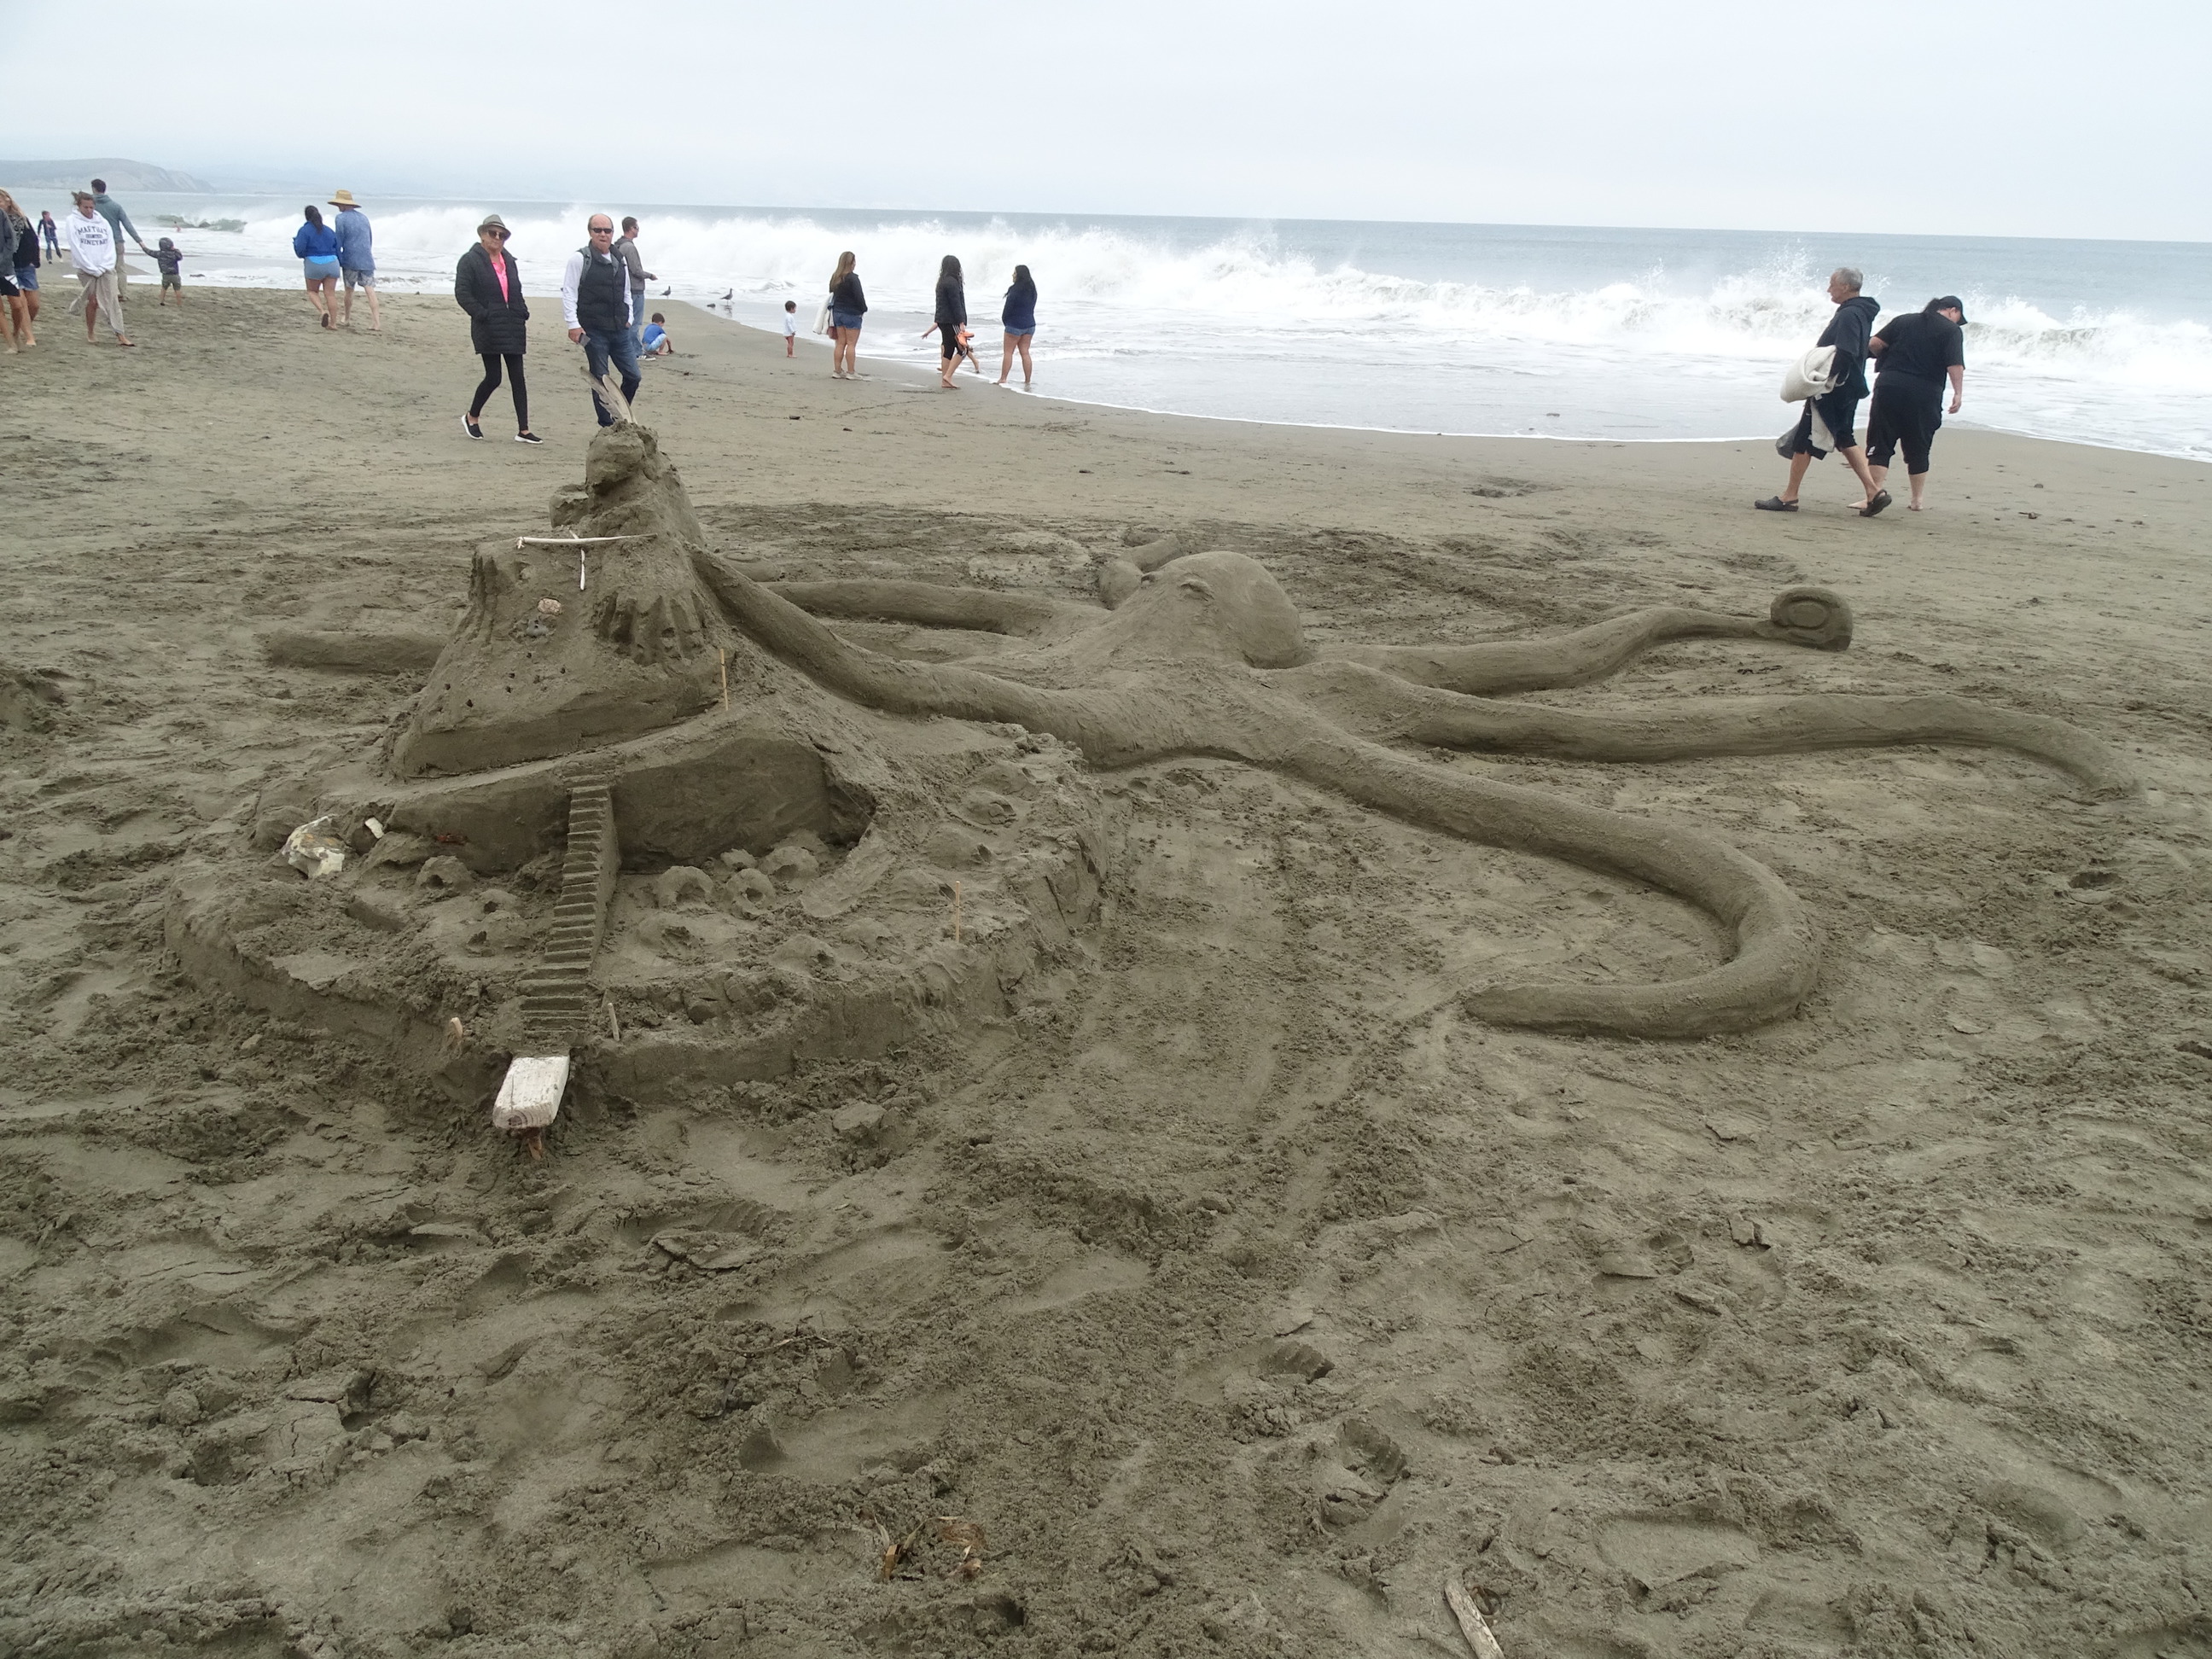 A sand sculpture of an octopus or a kraken attacking a castle.